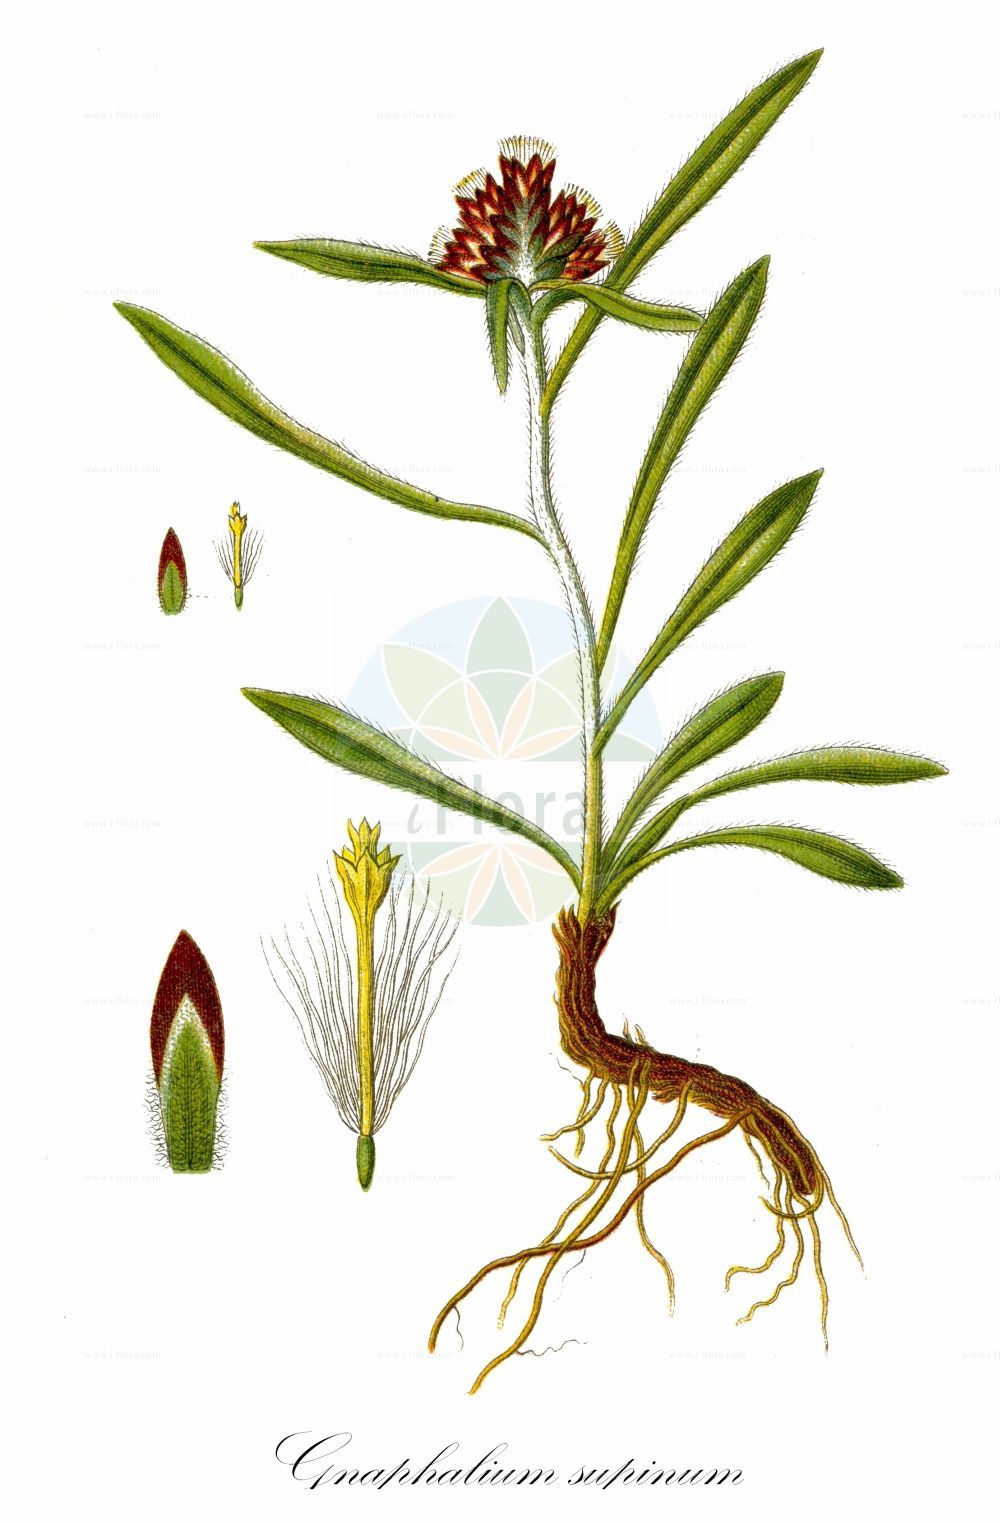 Historische Abbildung von Gnaphalium supinum (Zwerg-Ruhrkraut - Dwarf Cudweed). Das Bild zeigt Blatt, Bluete, Frucht und Same. ---- Historical Drawing of Gnaphalium supinum (Zwerg-Ruhrkraut - Dwarf Cudweed). The image is showing leaf, flower, fruit and seed.(Gnaphalium supinum,Zwerg-Ruhrkraut,Dwarf Cudweed,Gnaphalium balcanicum,Gnaphalium fuscum,Gnaphalium pusillum,Gnaphalium subacaule,Gnaphalium supinum,Omalotheca supina,Zwerg-Ruhrkraut,Dwarf Cudweed,Alpine Arctic Cudweed,Heath Cudweed,Gnaphalium,Ruhrkraut,Cudweed,Asteraceae,Korbblütengewächse,Daisy family,Blatt,Bluete,Frucht,Same,leaf,flower,fruit,seed,Sturm (1796f))